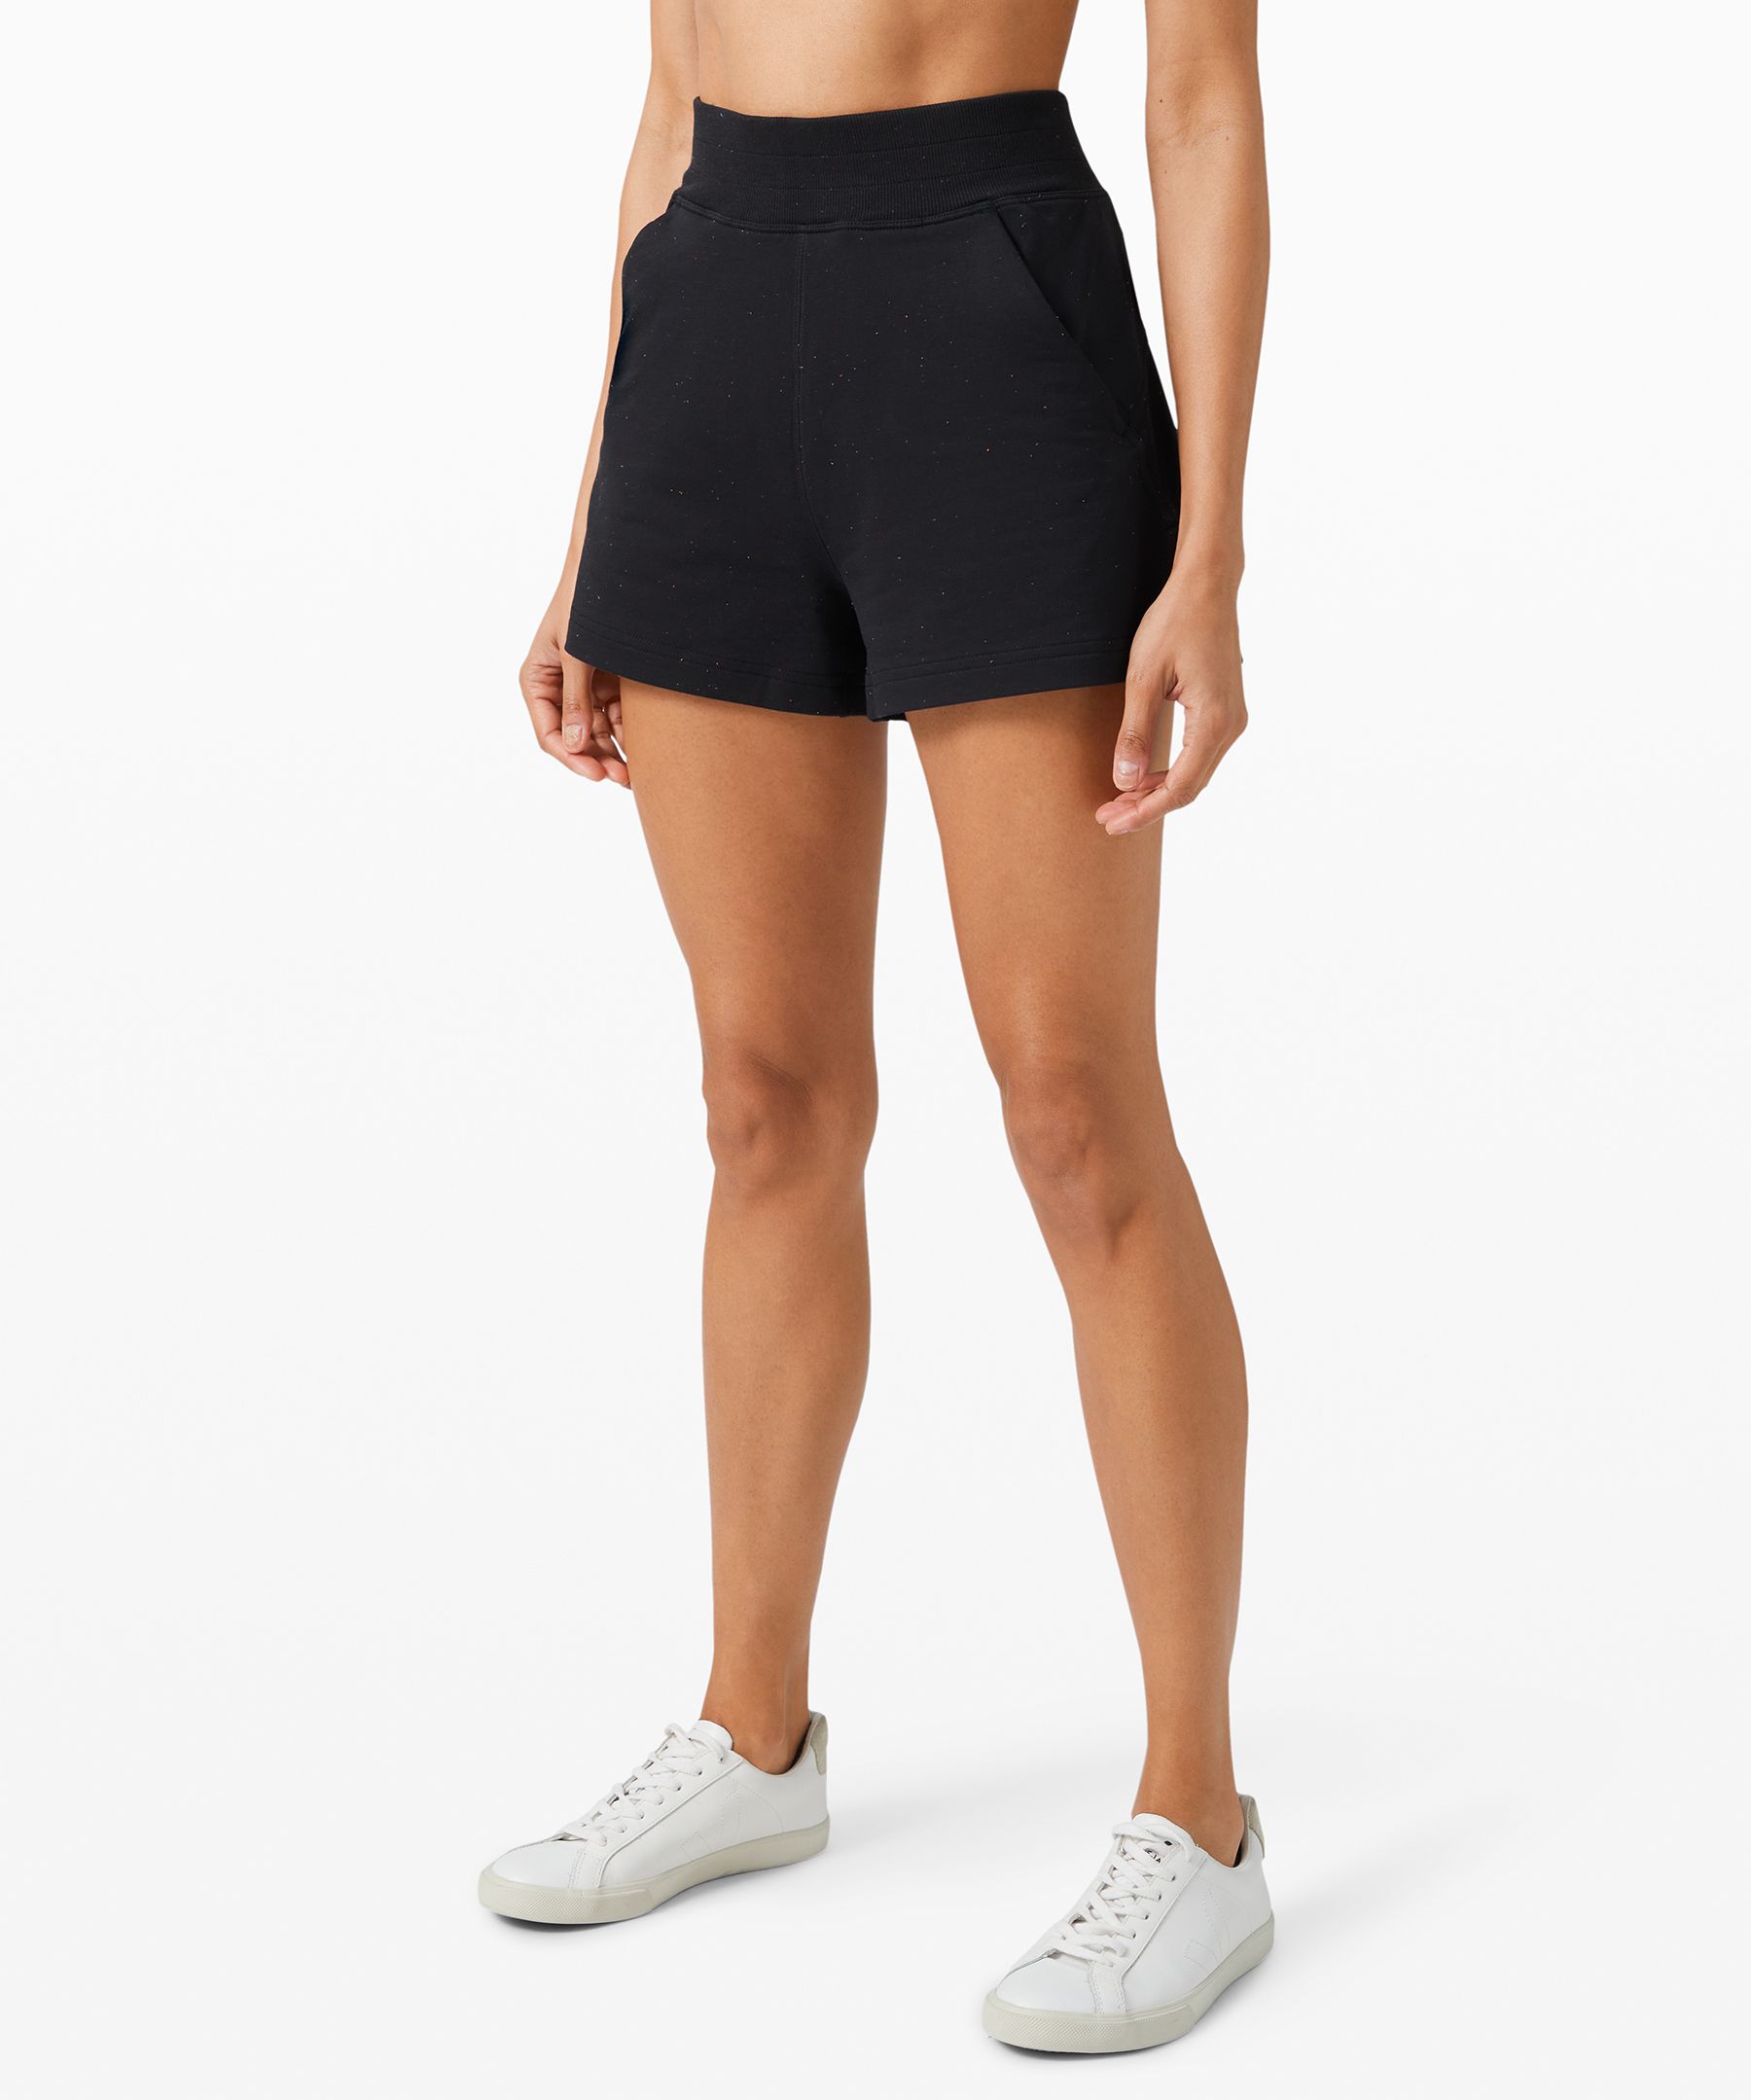 lululemon shorts womens